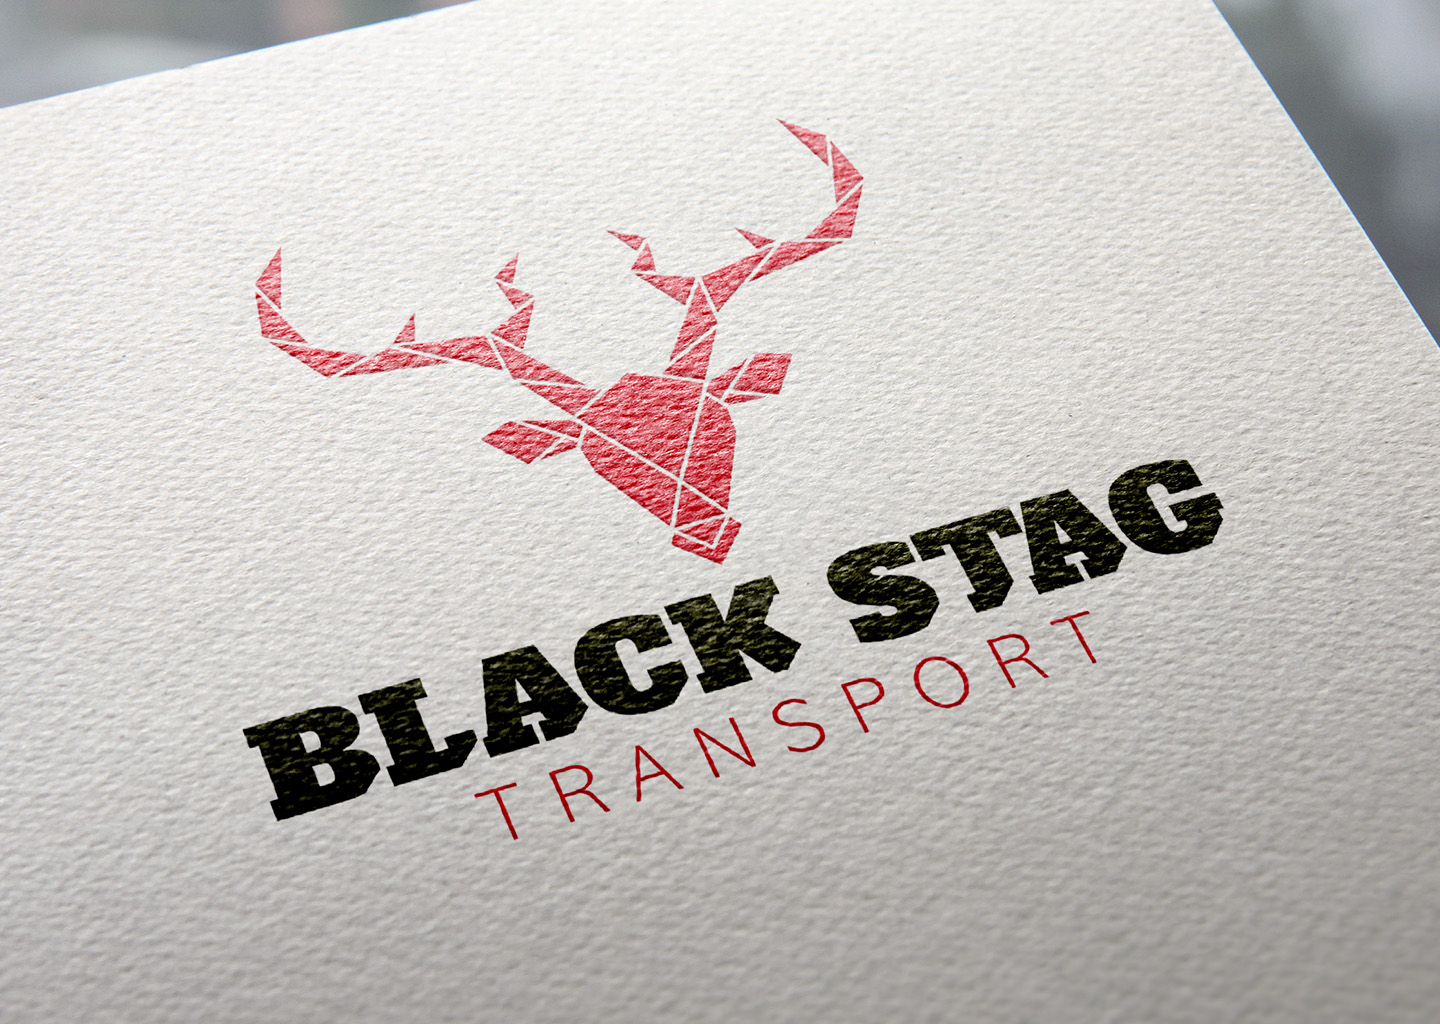 Black Stag Transport logo